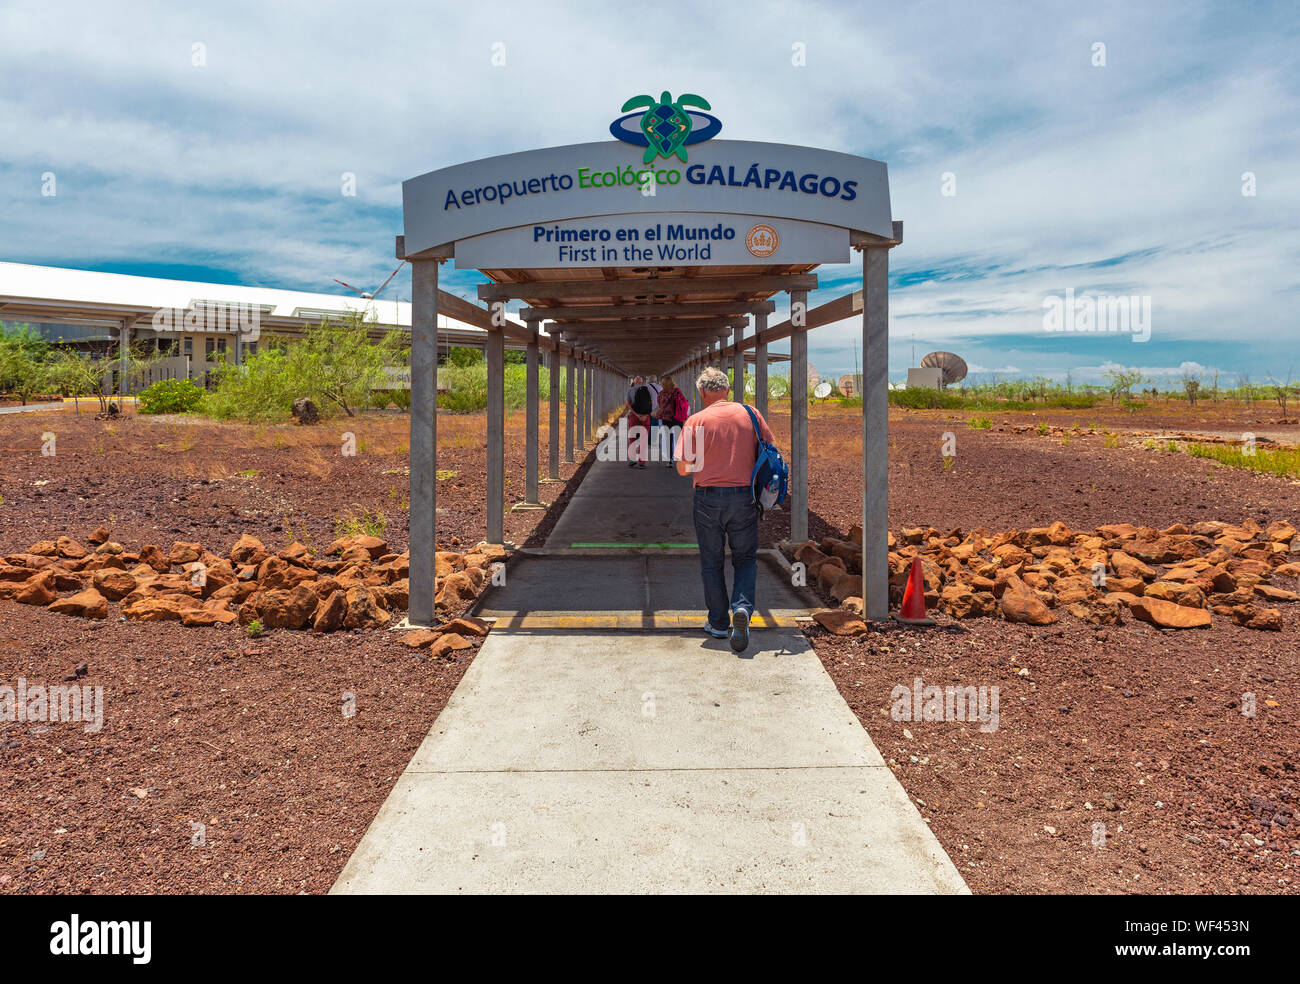 Les touristes à pied à l'Aceite de bâtiment de l'aéroport des îles Galapagos sur l'Île Baltra, travaillant sur l'énergie solaire et éolienne, de l'Équateur. Banque D'Images